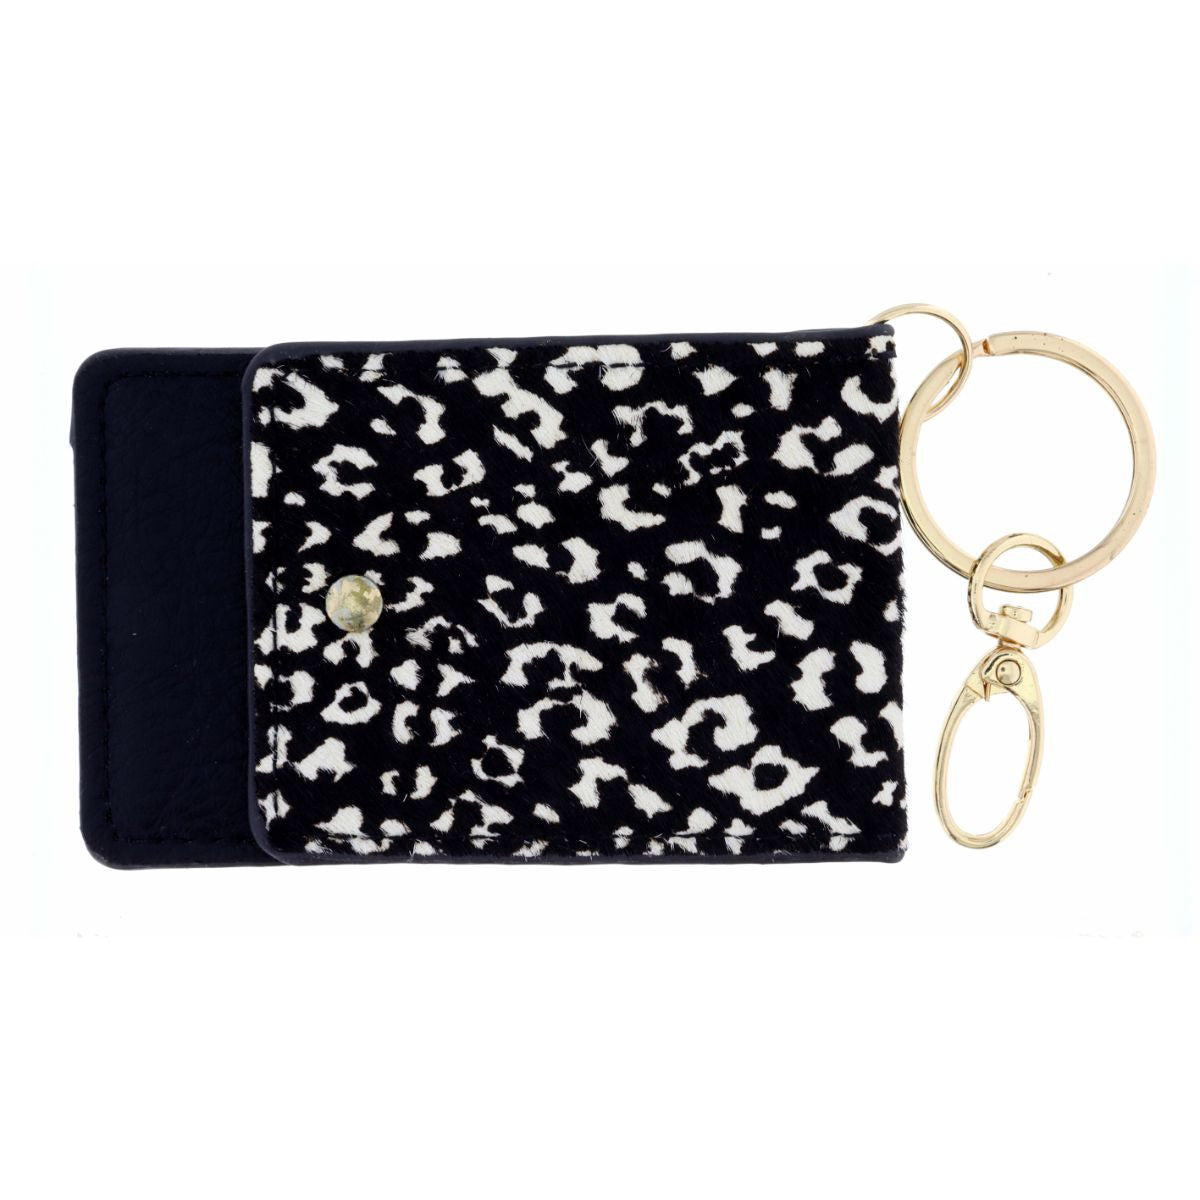 Cheetah Print Key Chain Wallet | Snap Pocket